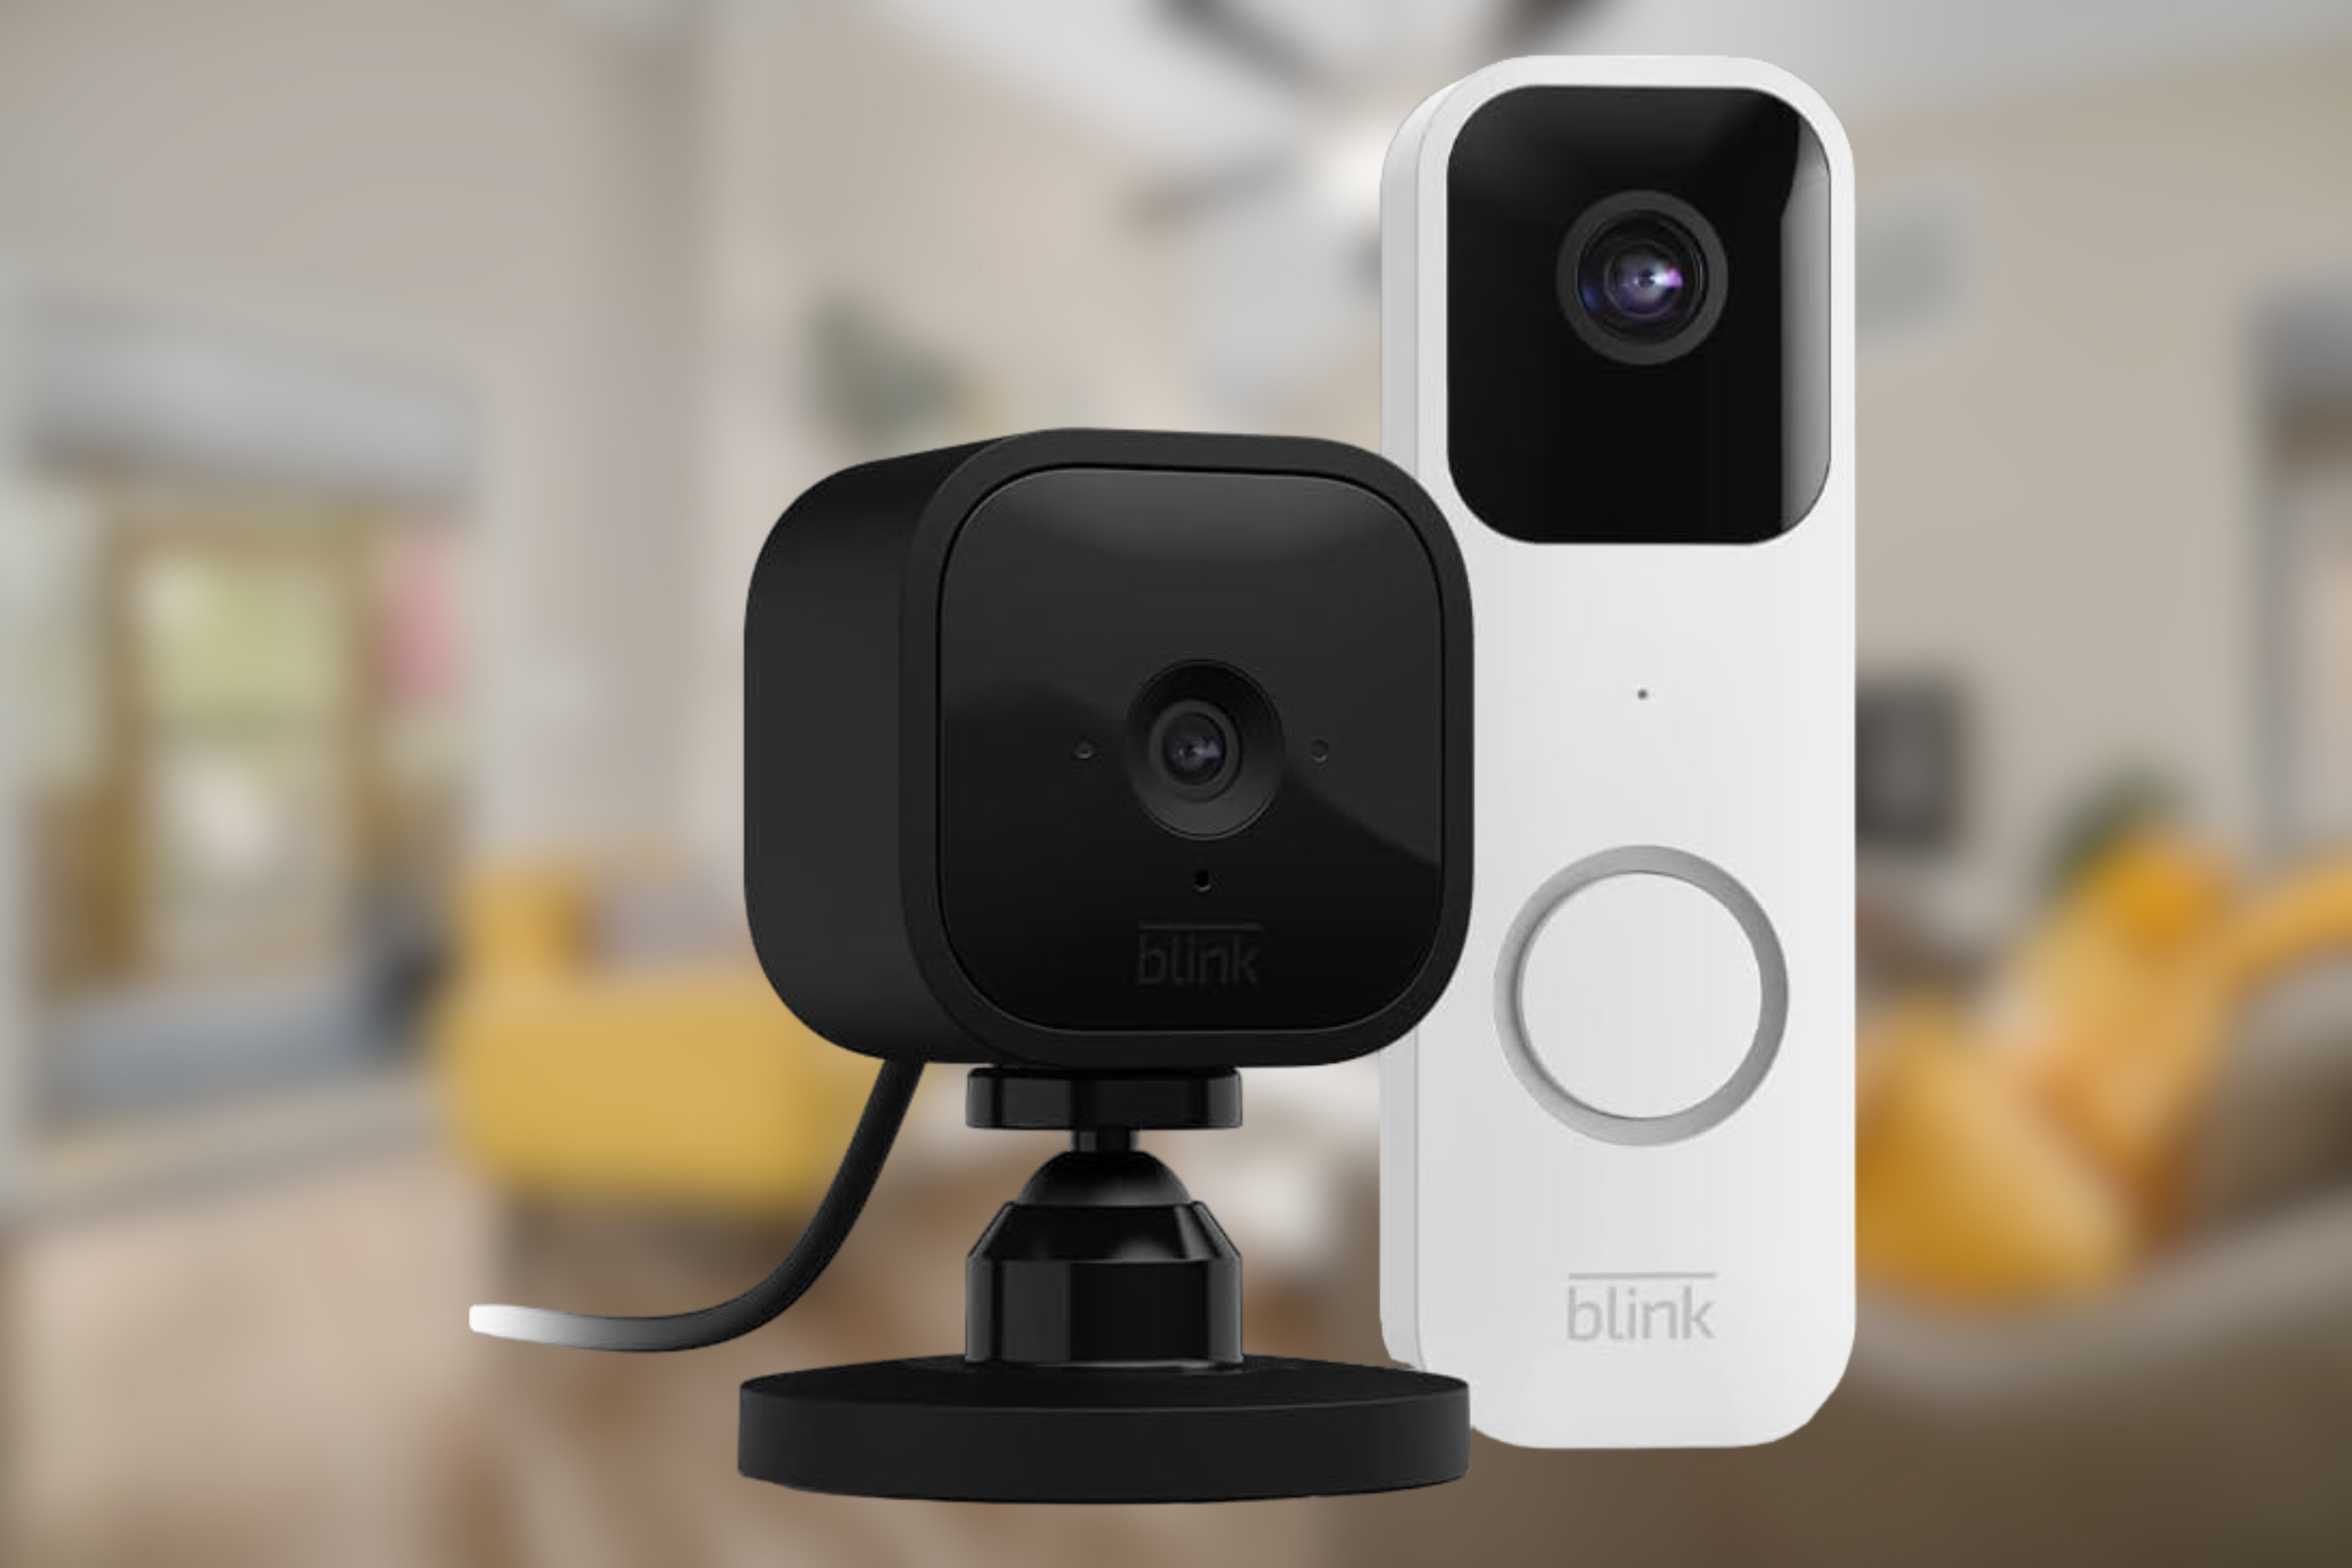 Blink doorbell + camera combo in front of living room 